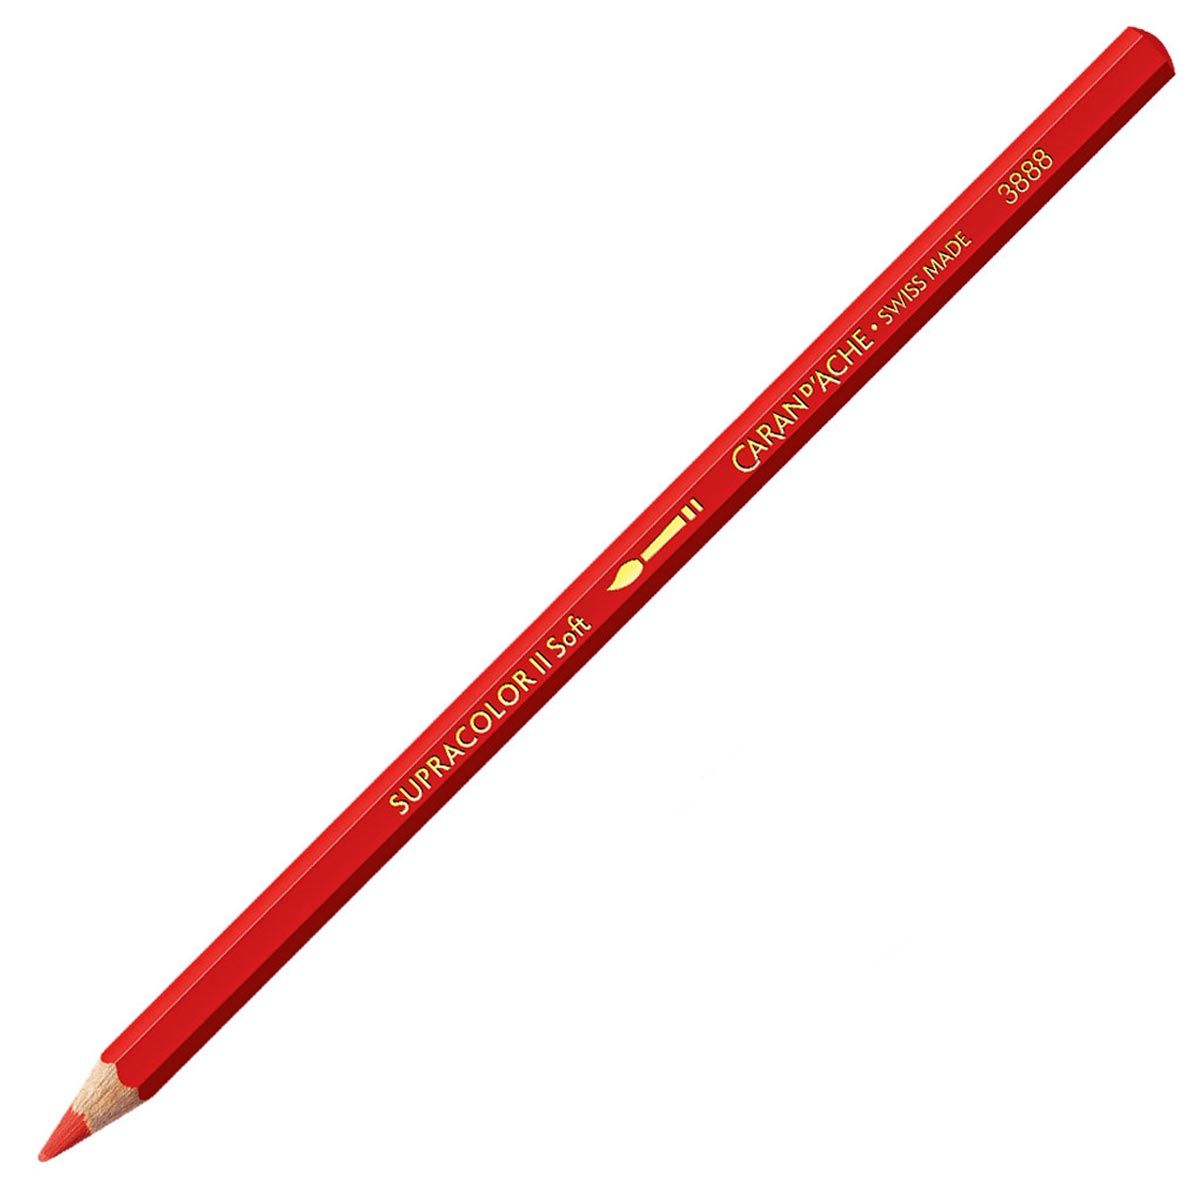 Caran d'Ache Supracolor ll Soft Aquarelle Pencil - Scarlet 070